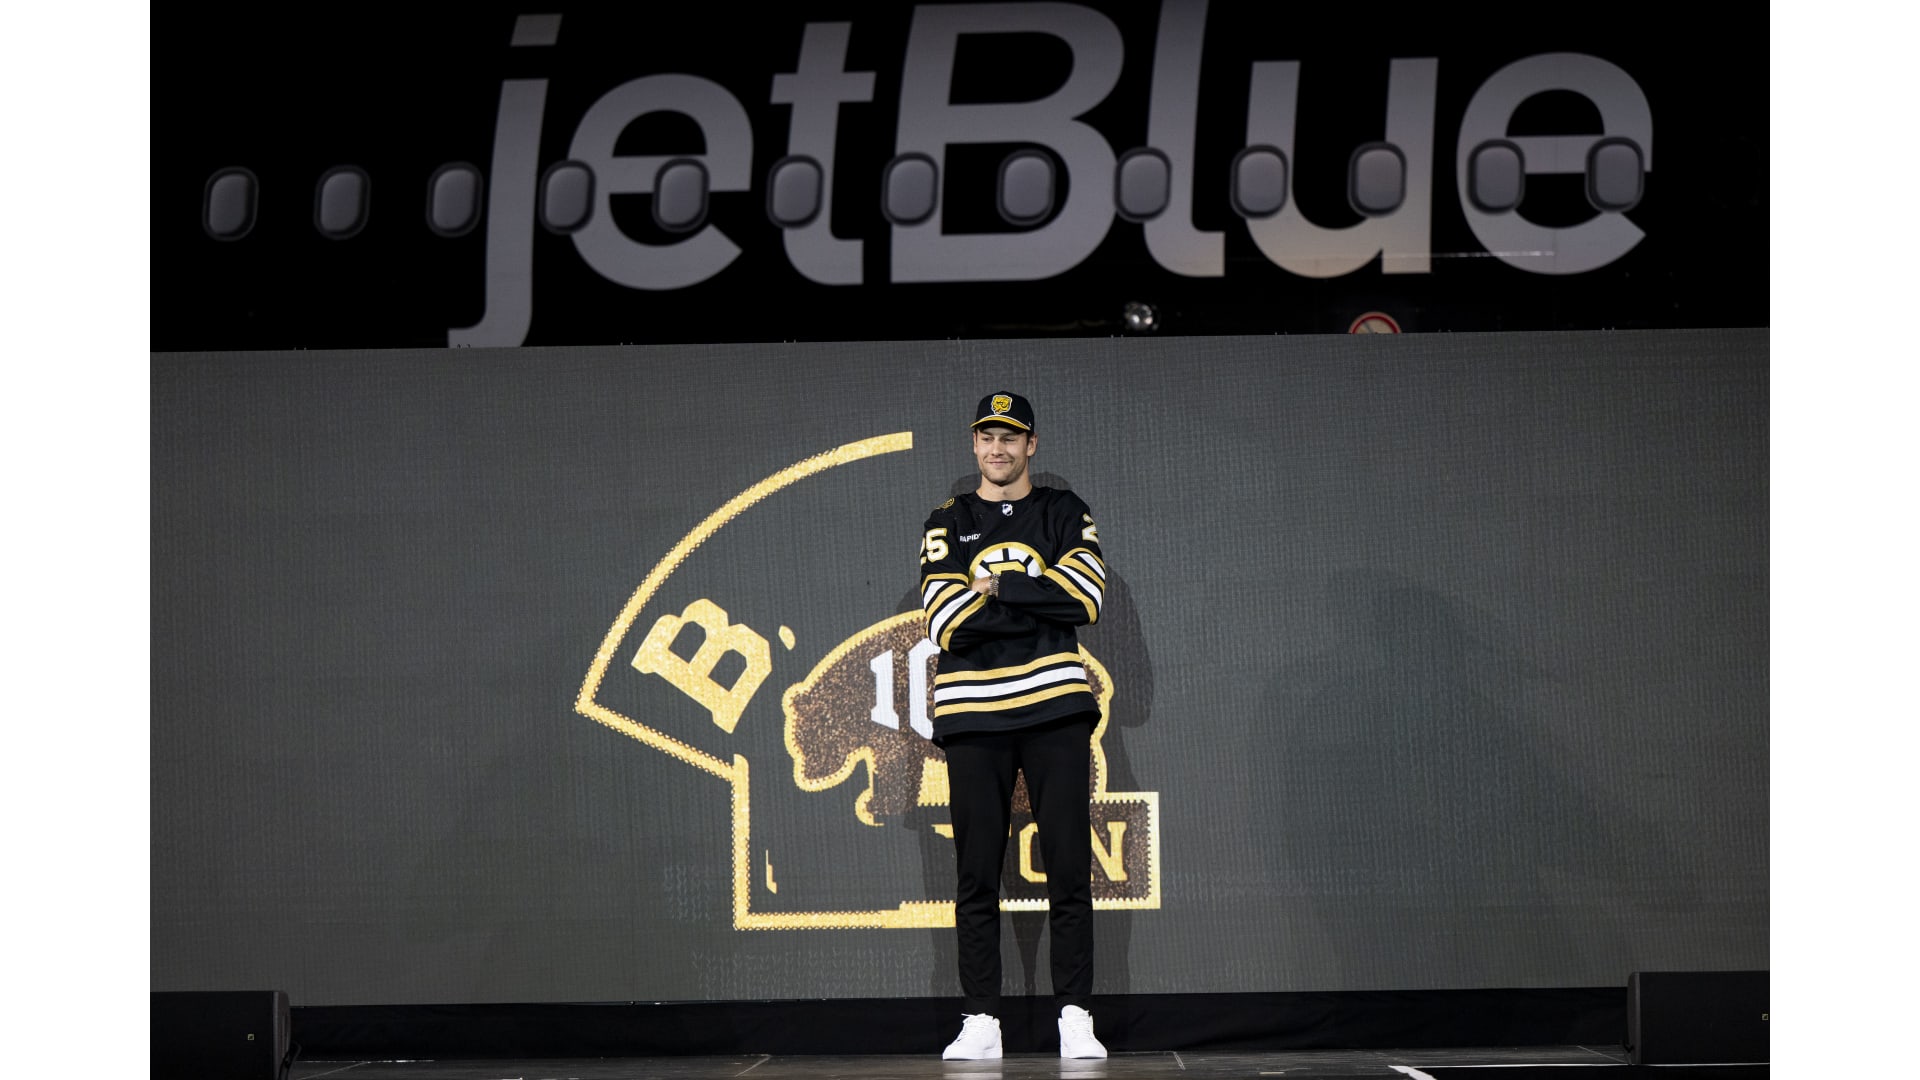 Bruins Model Centennial Jerseys at JetBlue Takeoff Event